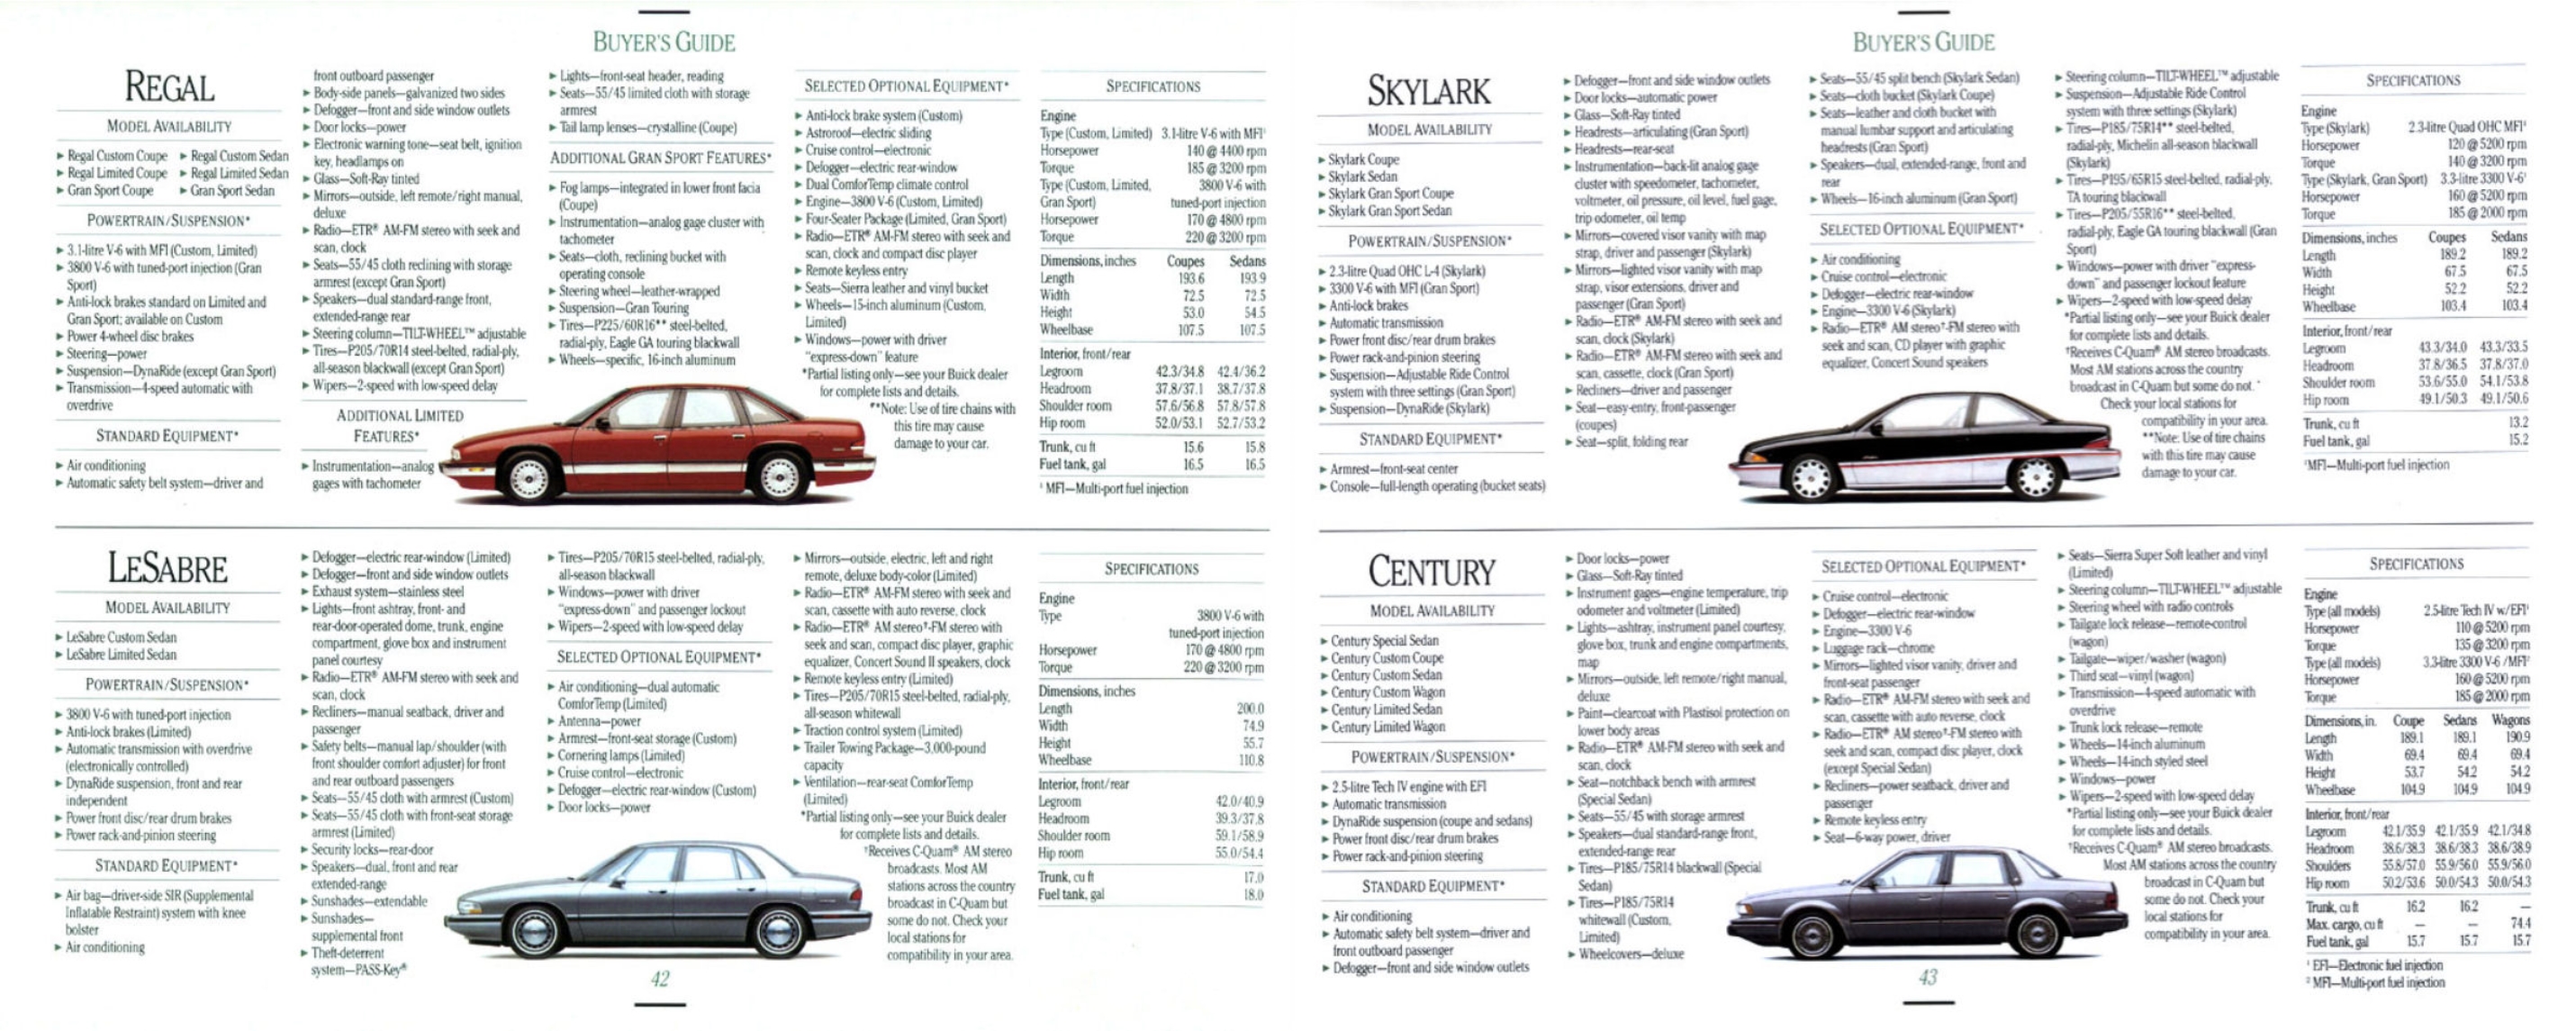 1992 Buick Full Line-42-43